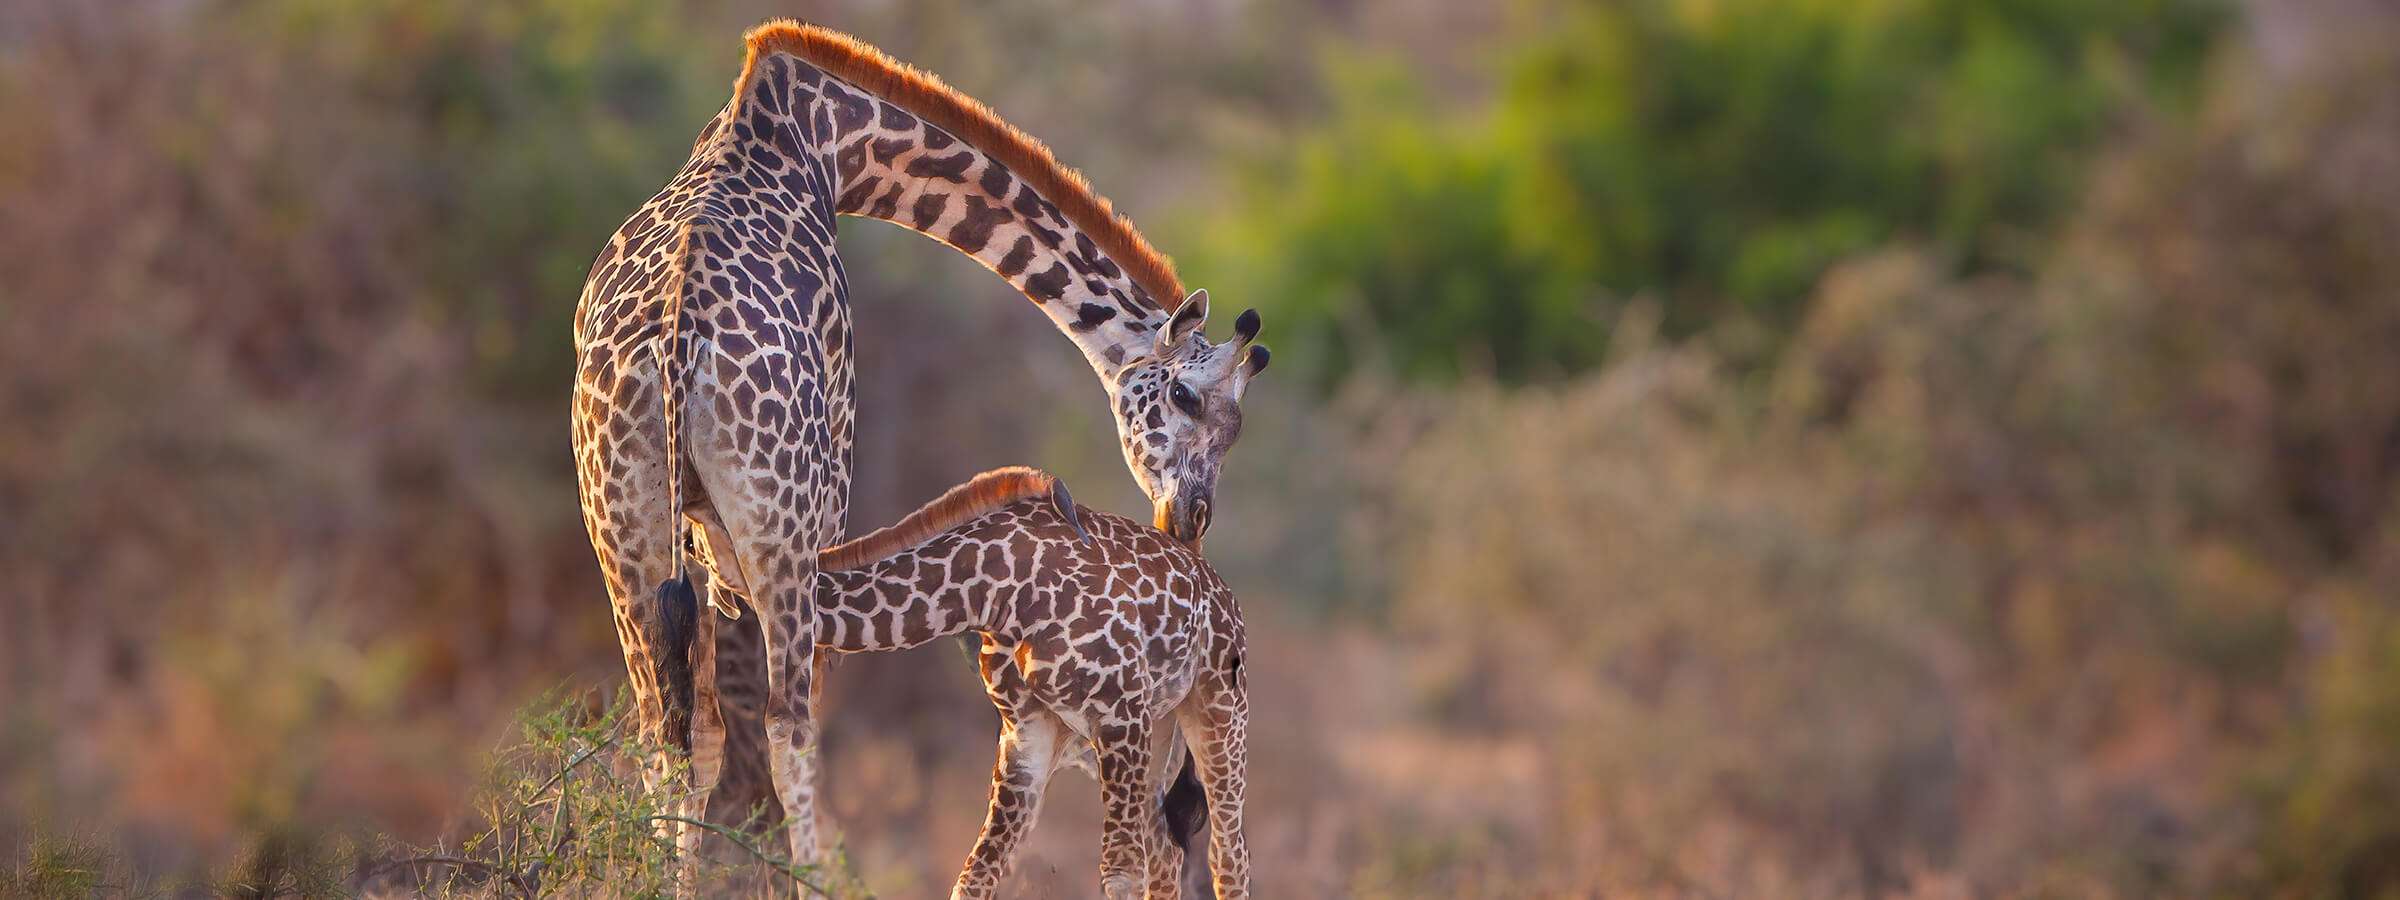 Tanzania - fem saker inlägg 1 - 5 saker du aldrig visste om giraffer